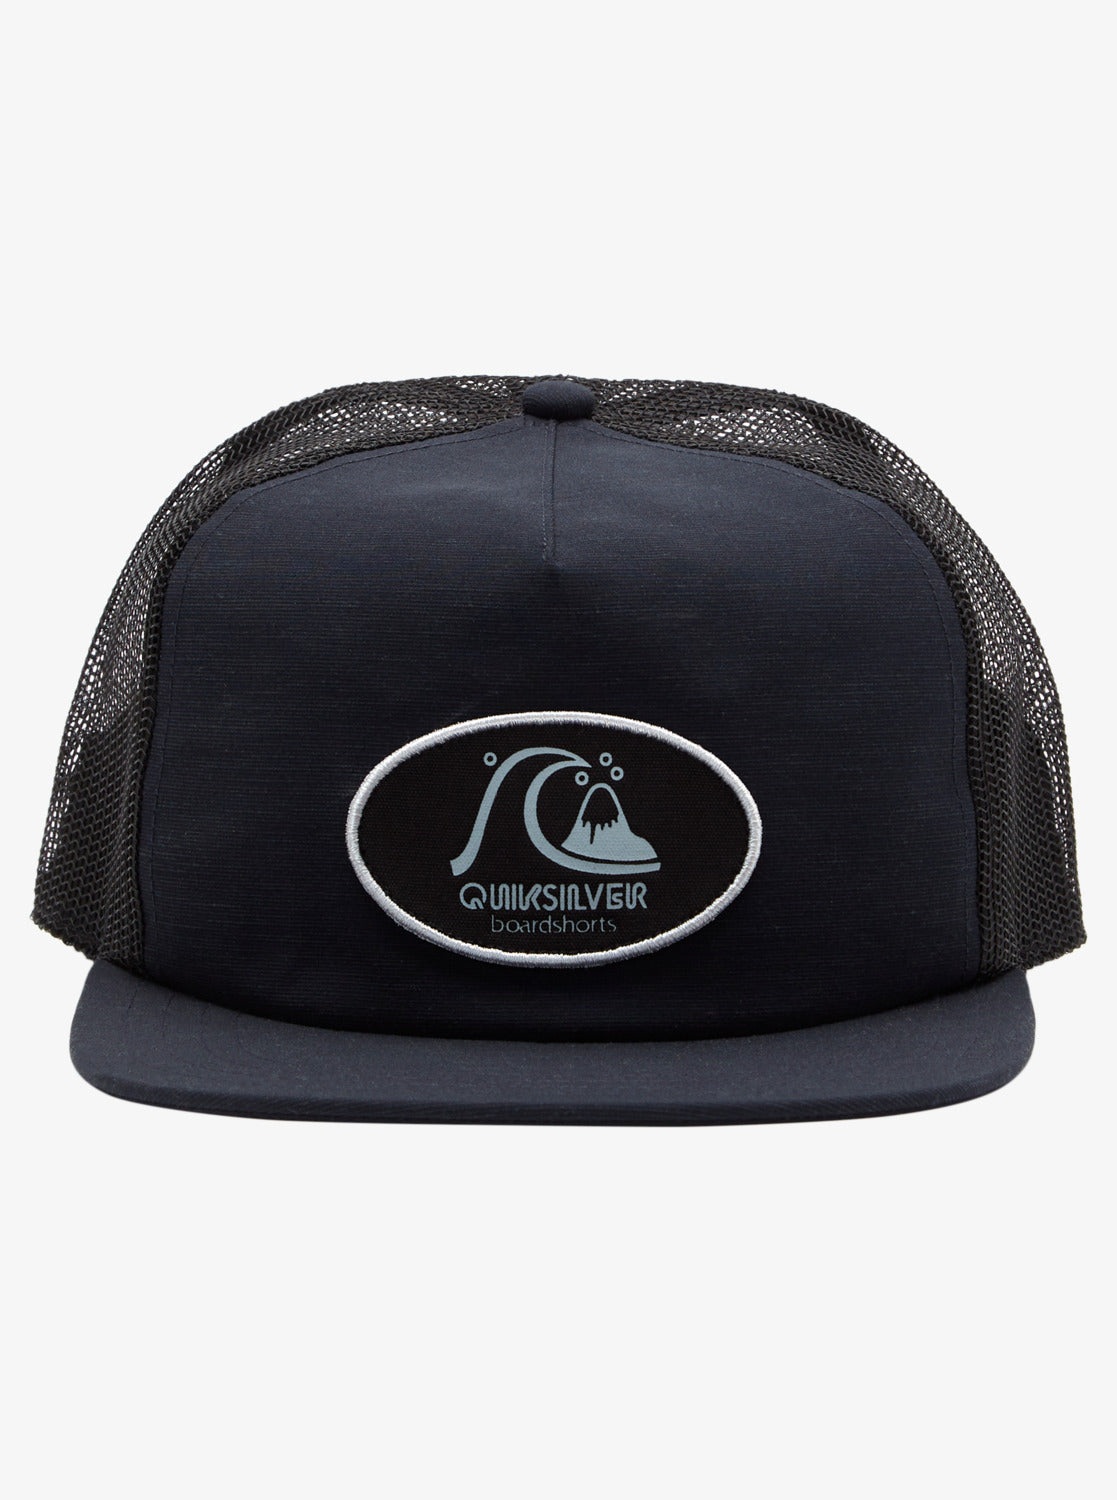 Quiksilver: Originals Trucker Hat